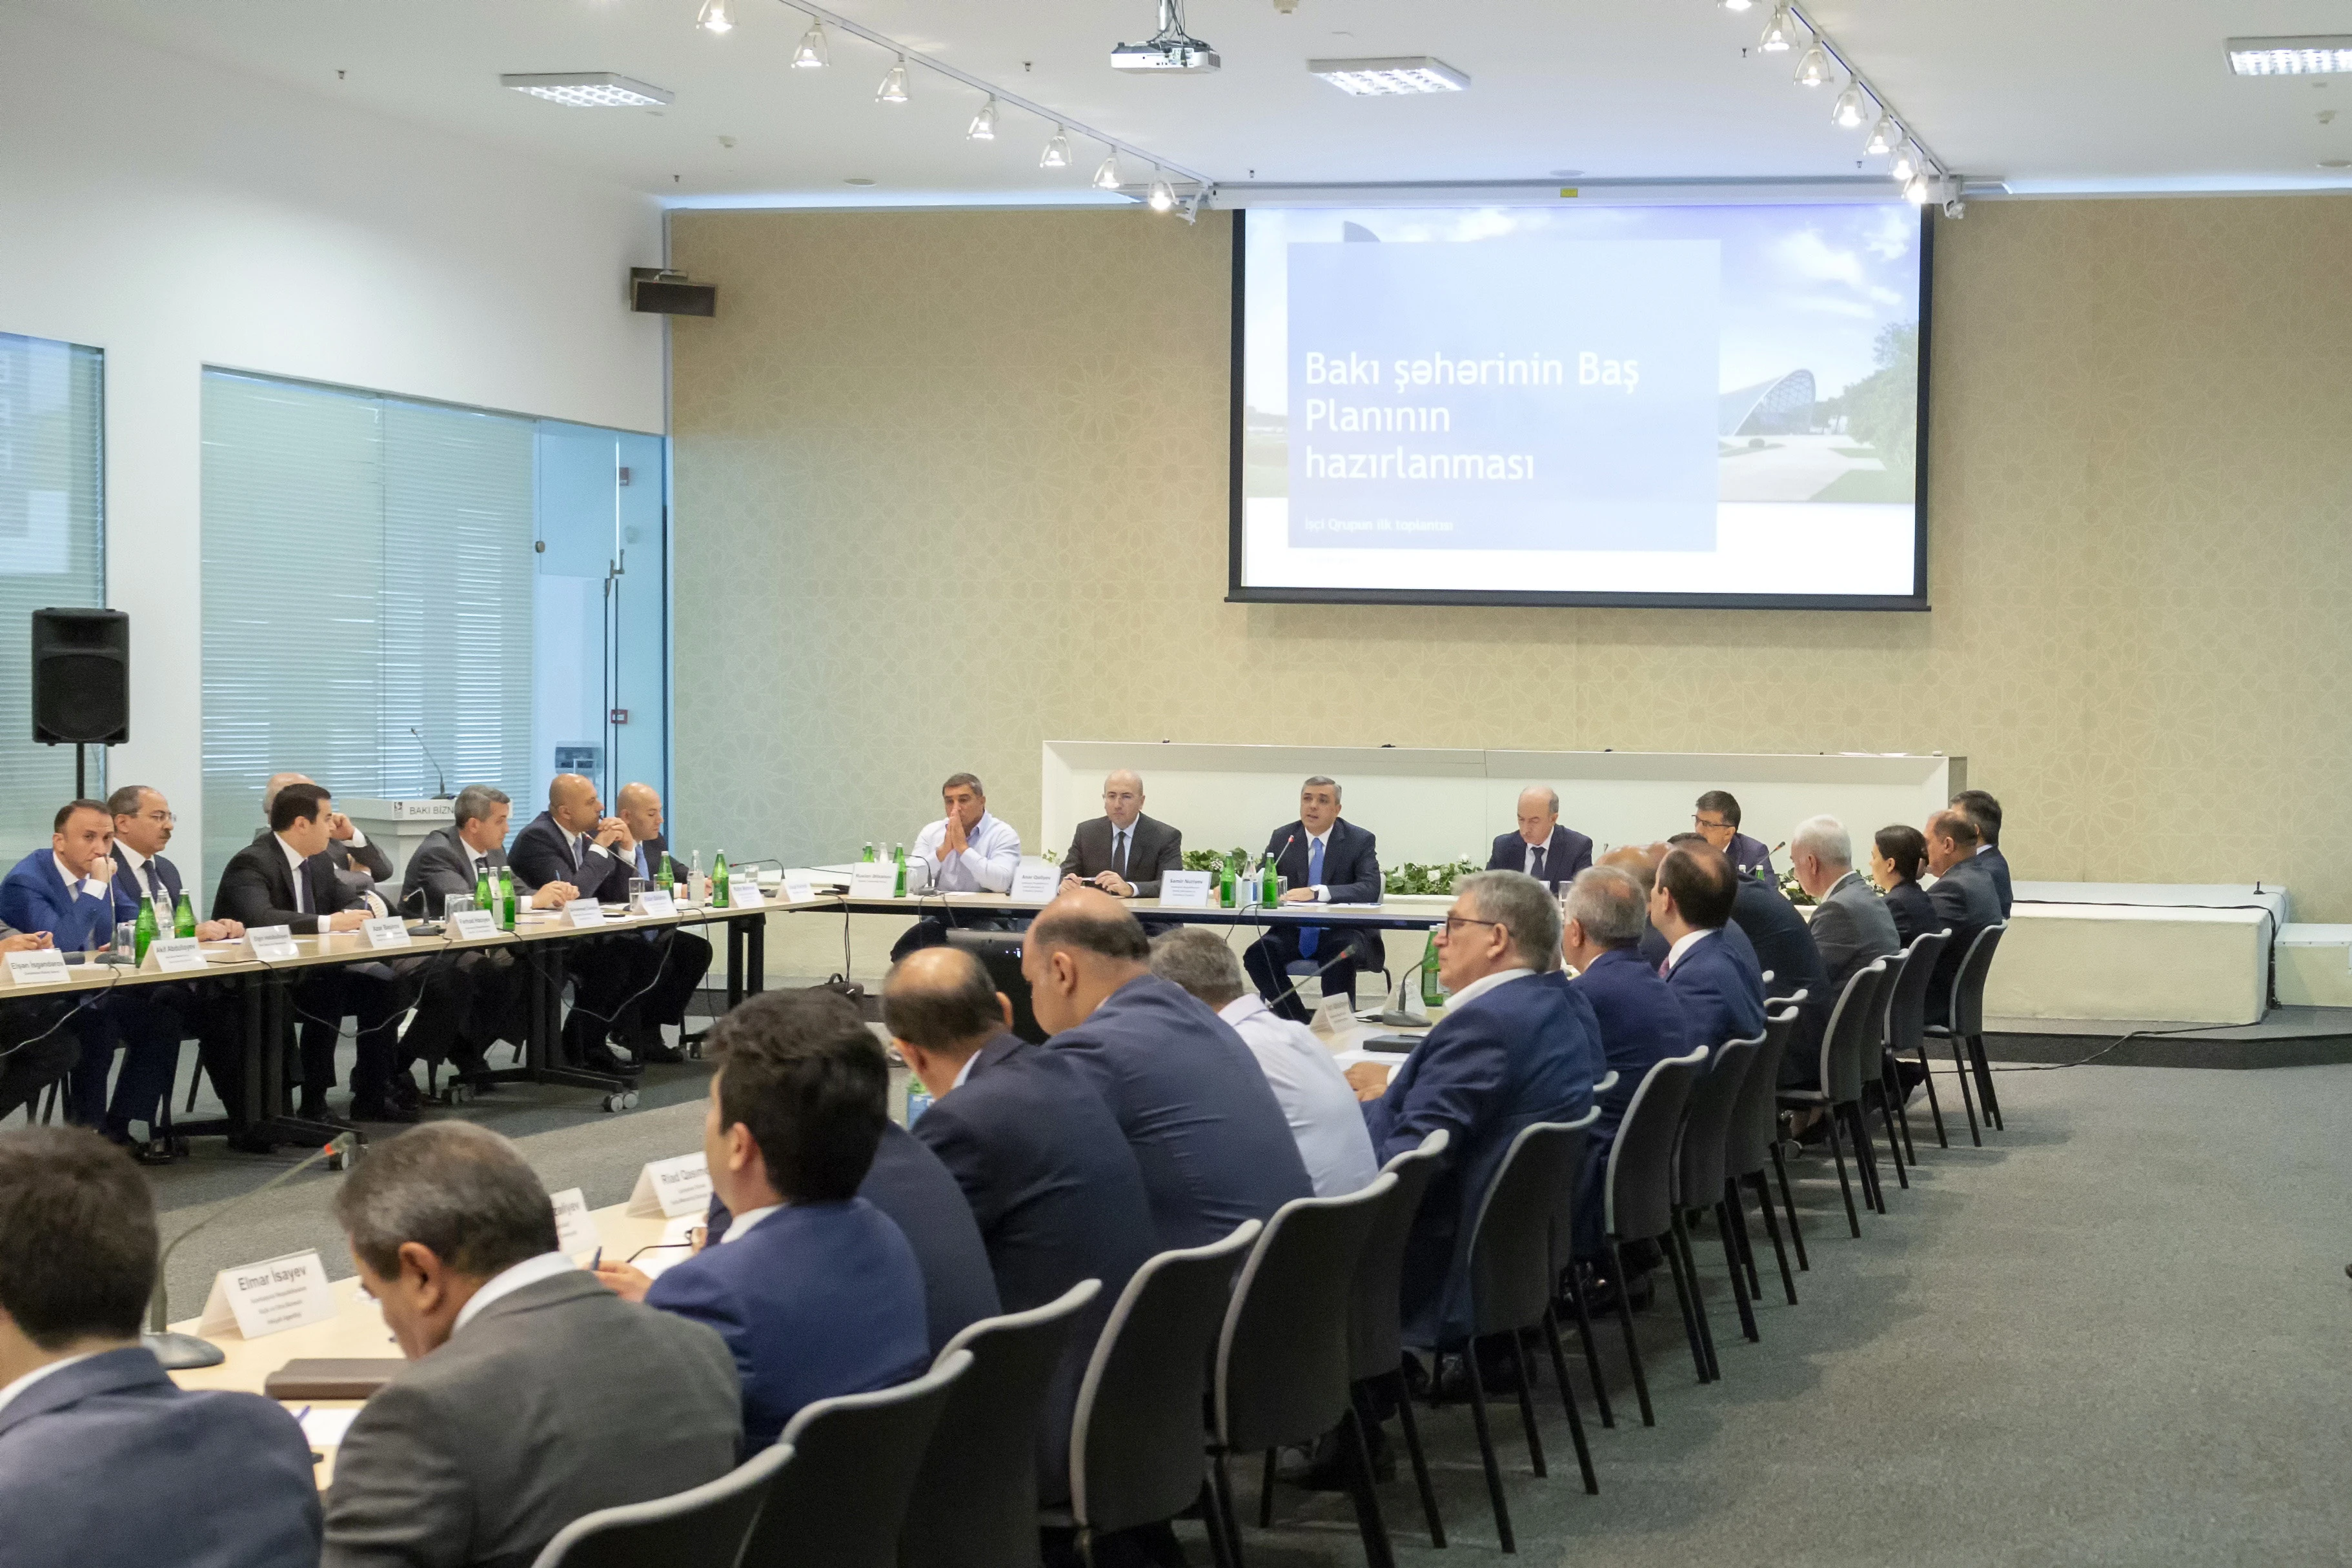 Состоялось первое заседание межведомственной рабочей группы по подготовке генплана Баку